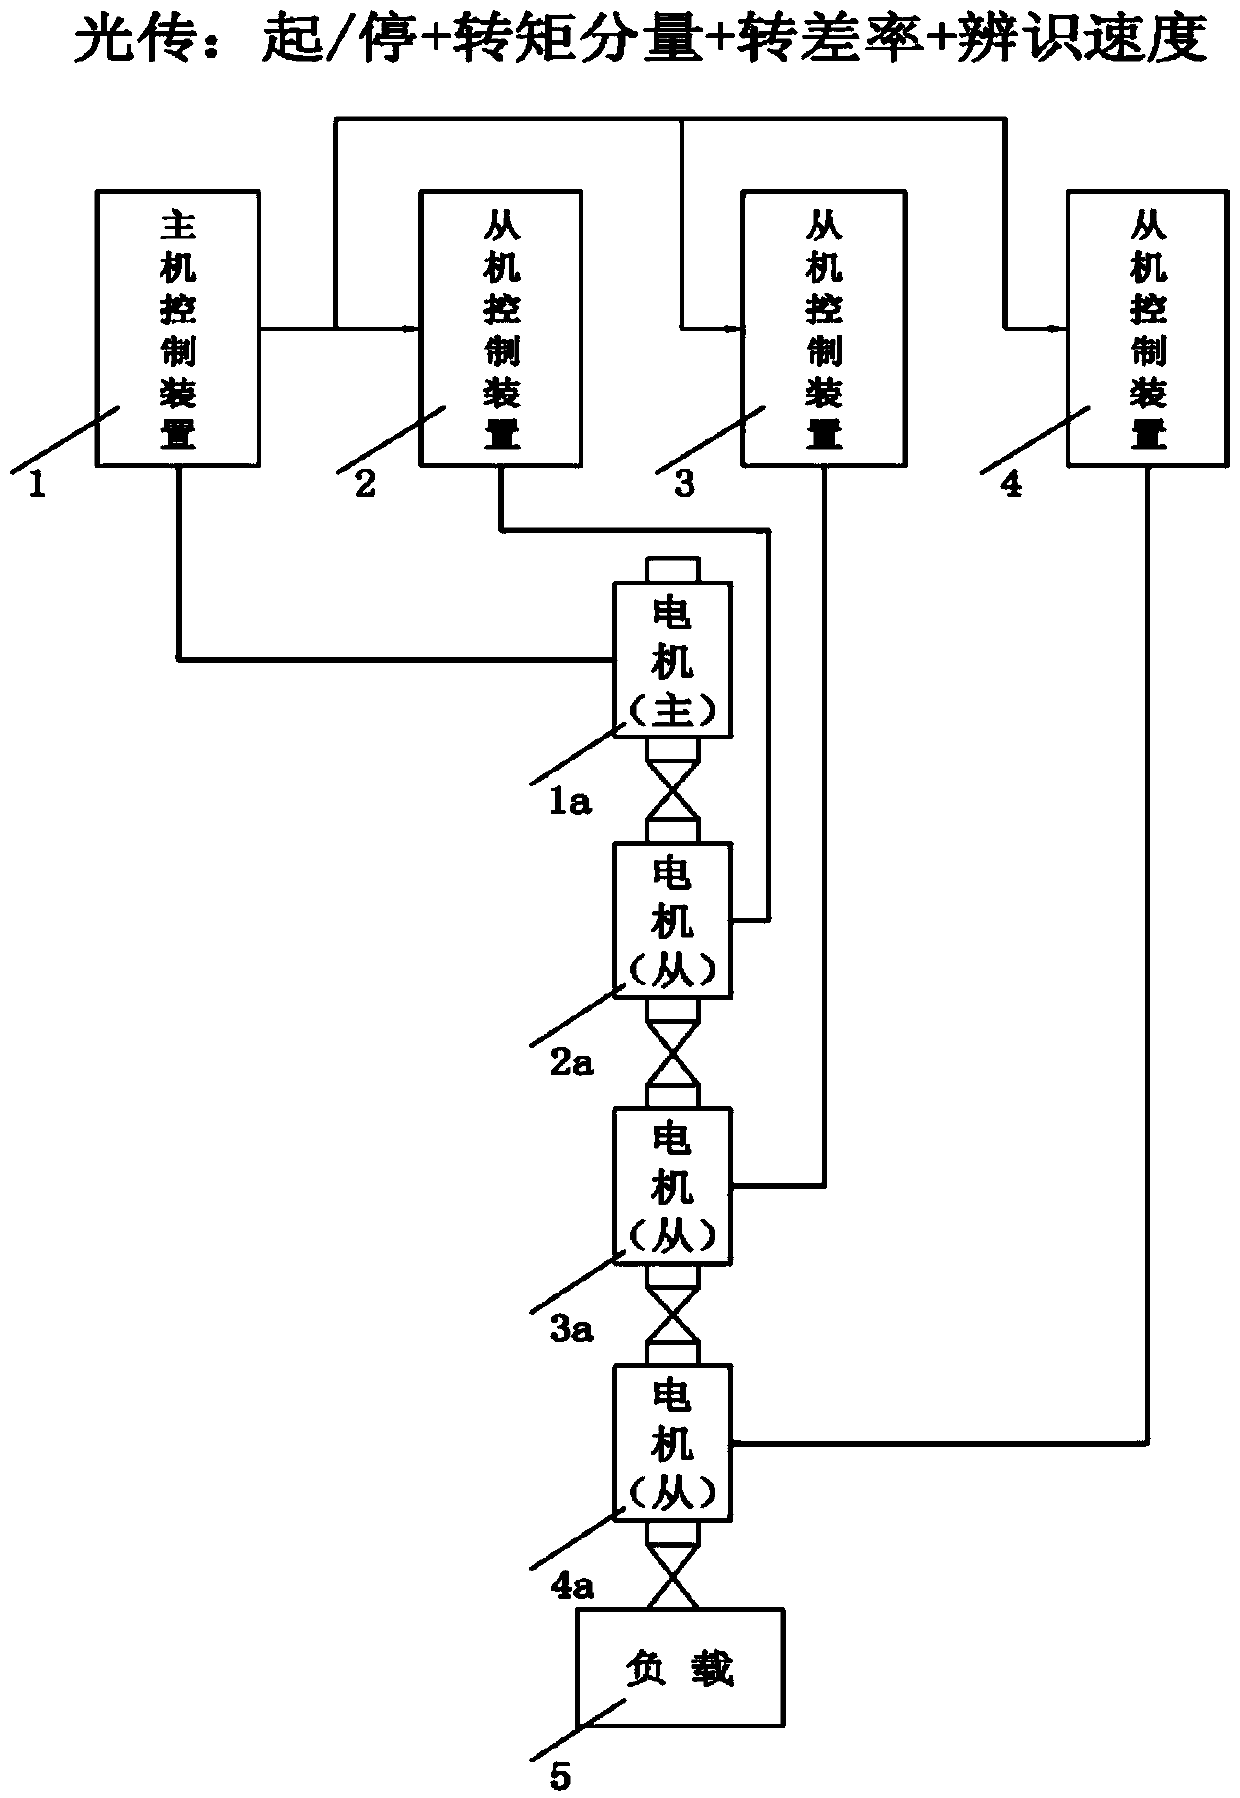 Multi-motor synchronization control system